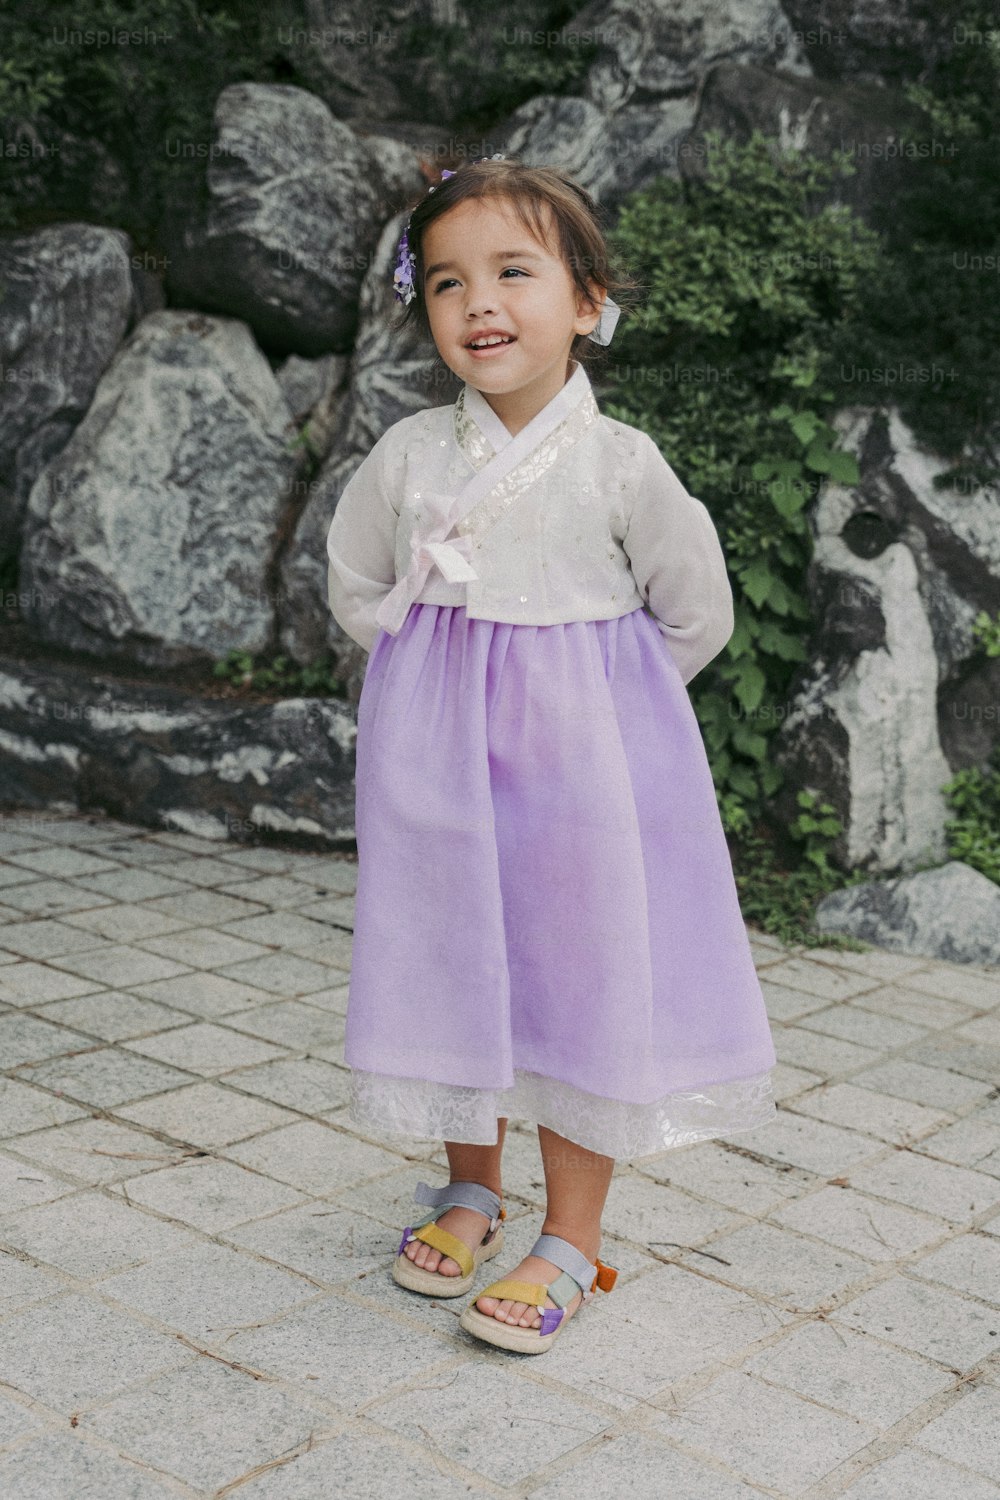 Une petite fille en robe violette debout devant des rochers